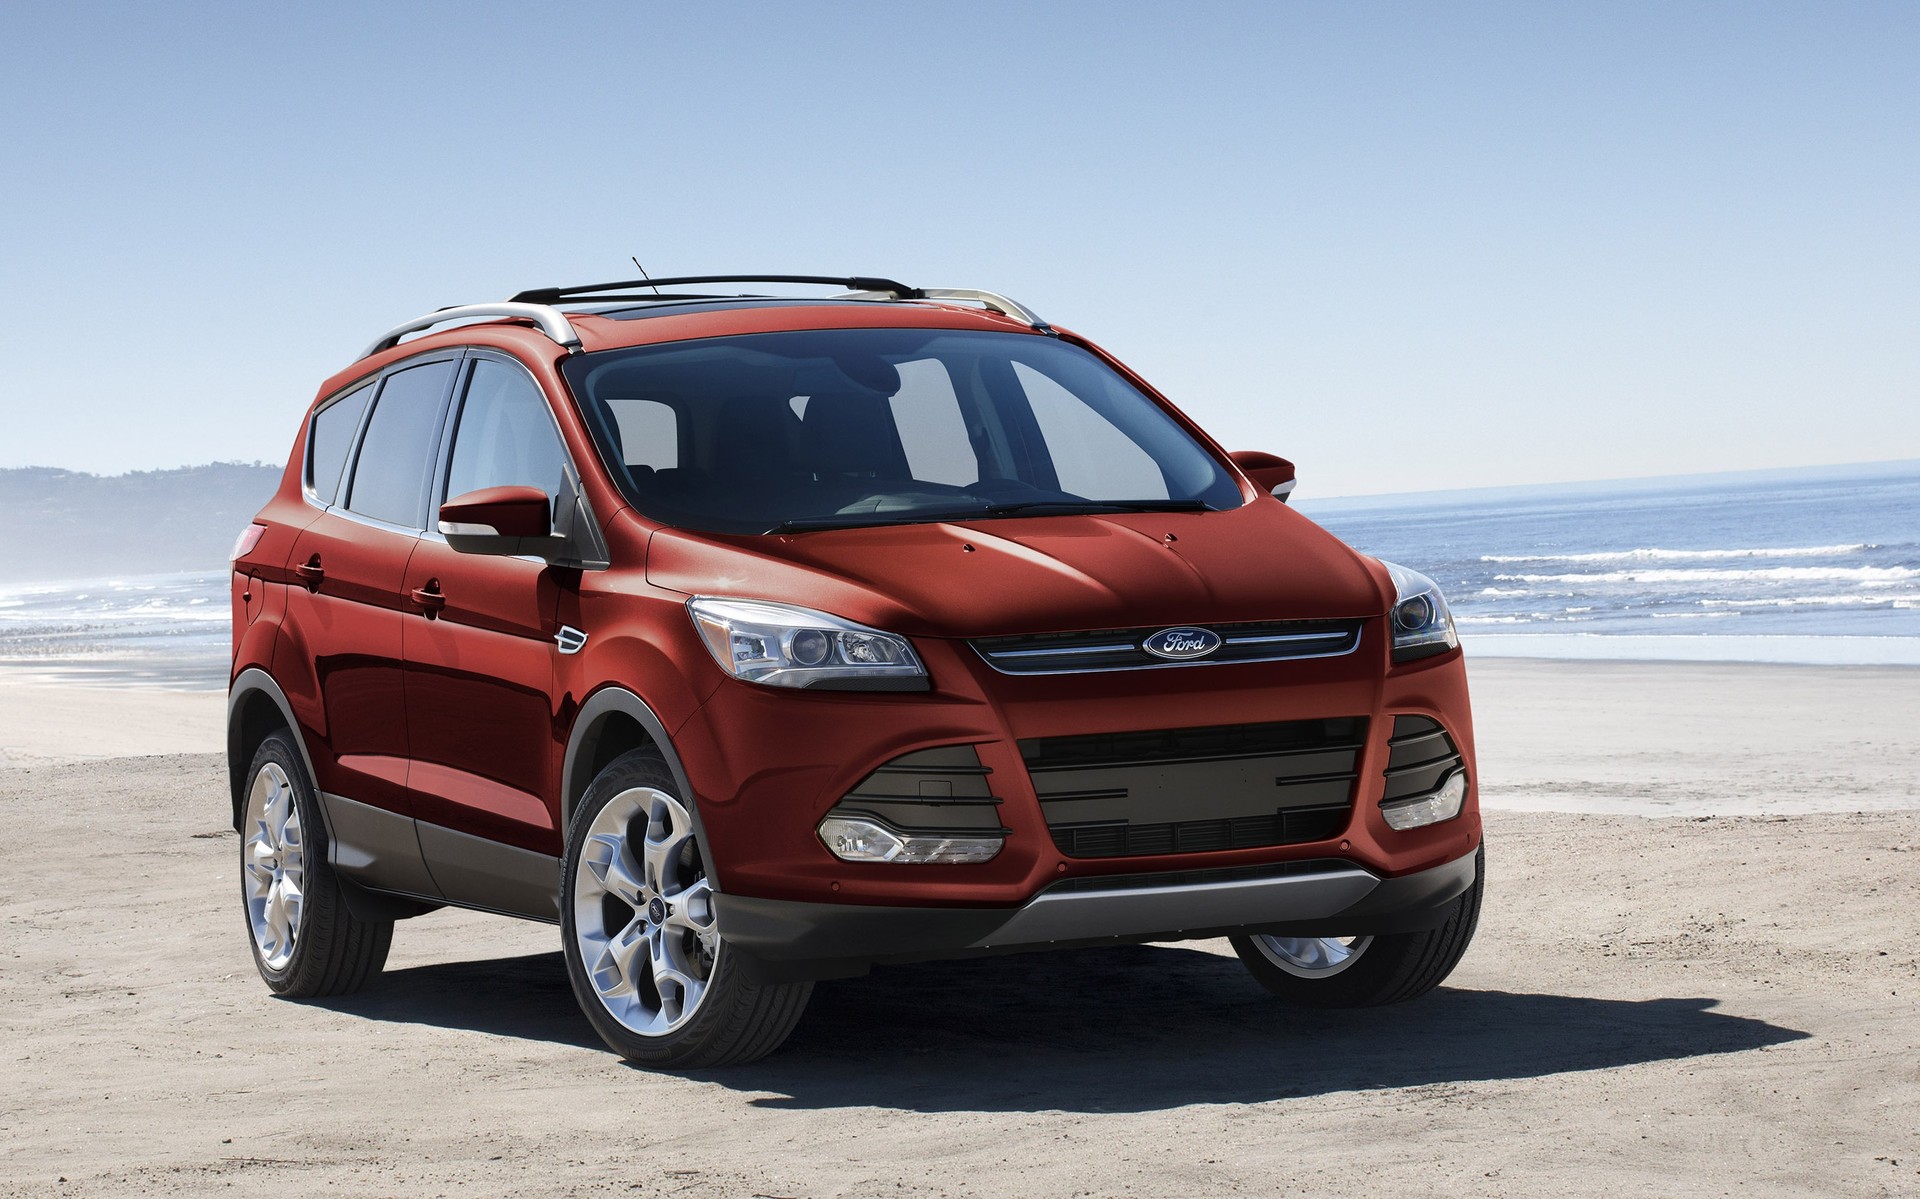 Ford Escape 2015 có nhiều thay đổi đáng kể so với mẫu cũ